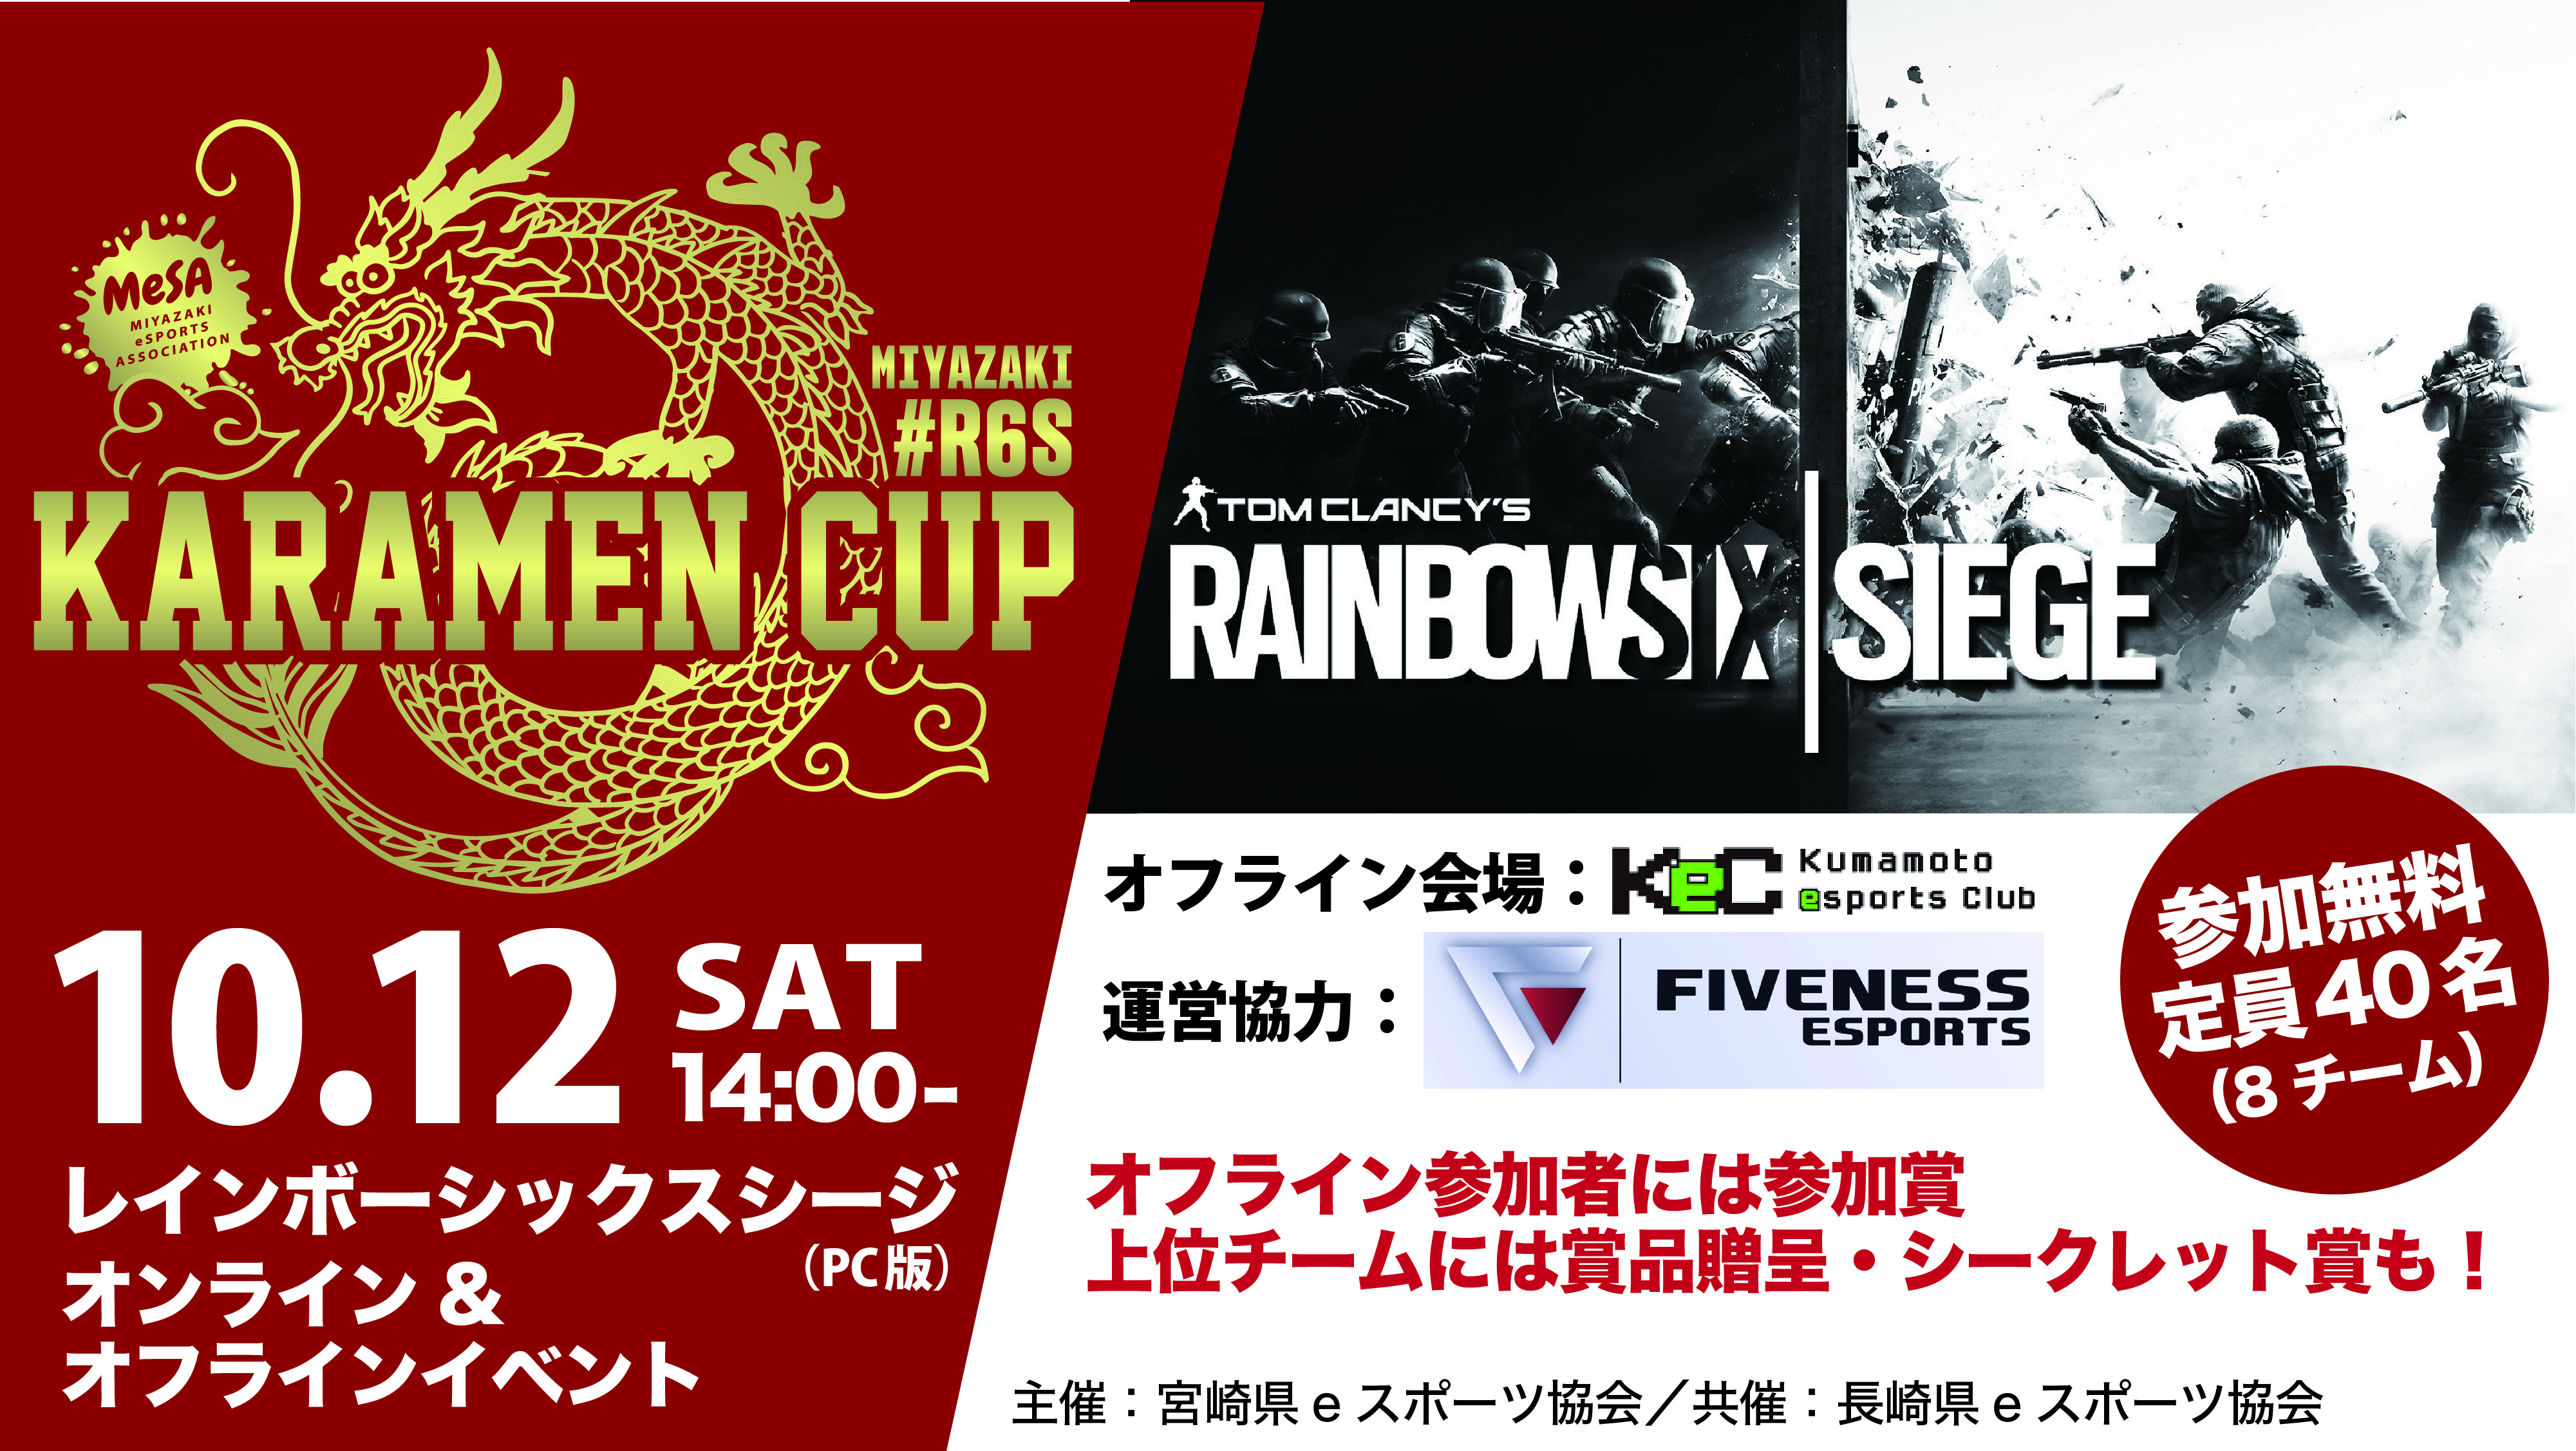 募集締切 10月12日開催 Rainbow Six Siege オフライン オンラインイベント Karamen Cup 開催